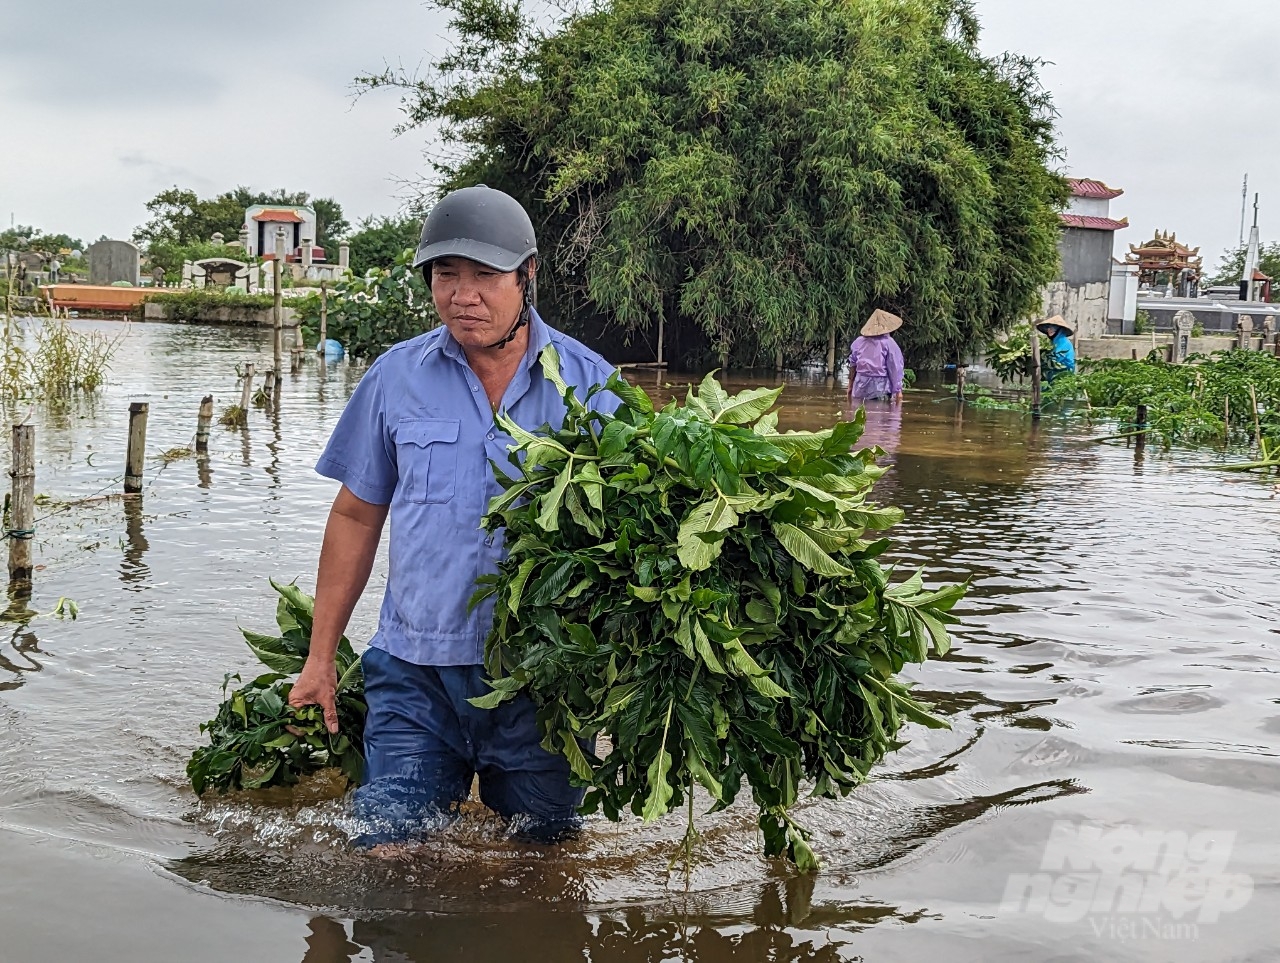 Hàng xóm của ông Thuyền cũng đến giúp gia đình ông thu hoạch chột nưa. Đối với người dân làng Niêm Phò, việc giúp nhau trong mùa mưa lụt đã trở thành lệ thường tốt đẹp từ ngàn xưa.